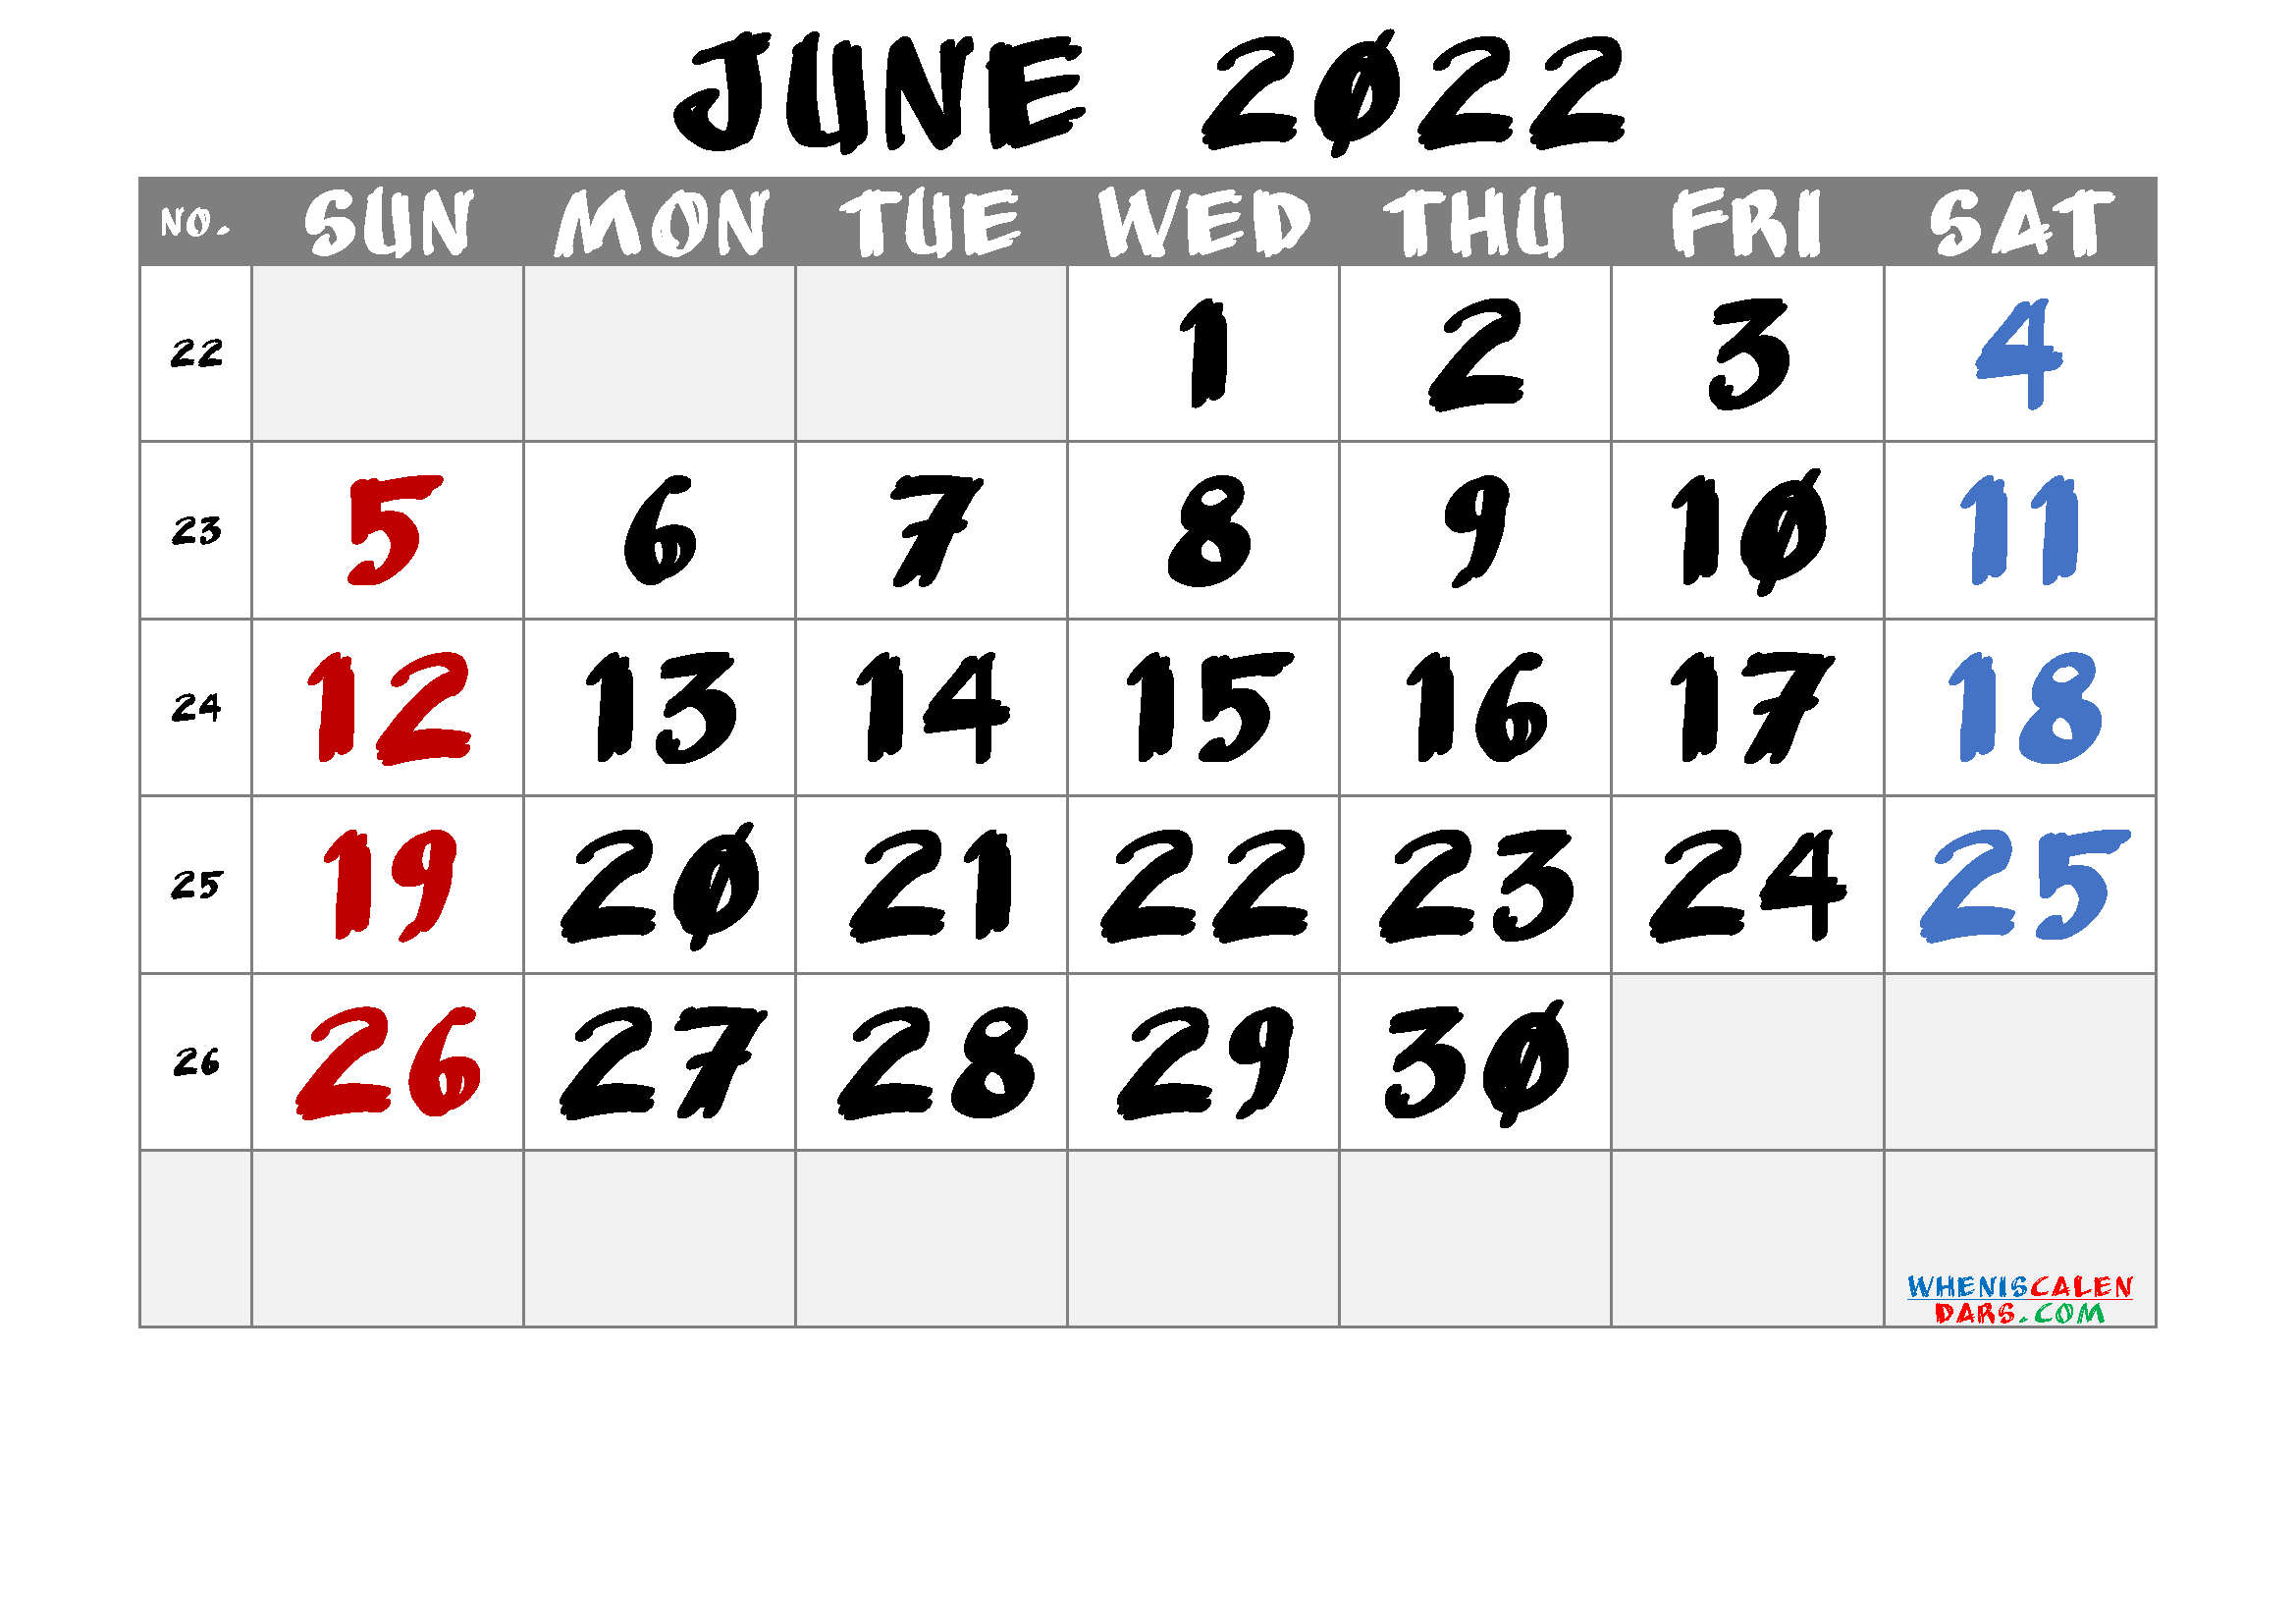 Free Printable June 2022 Calendars